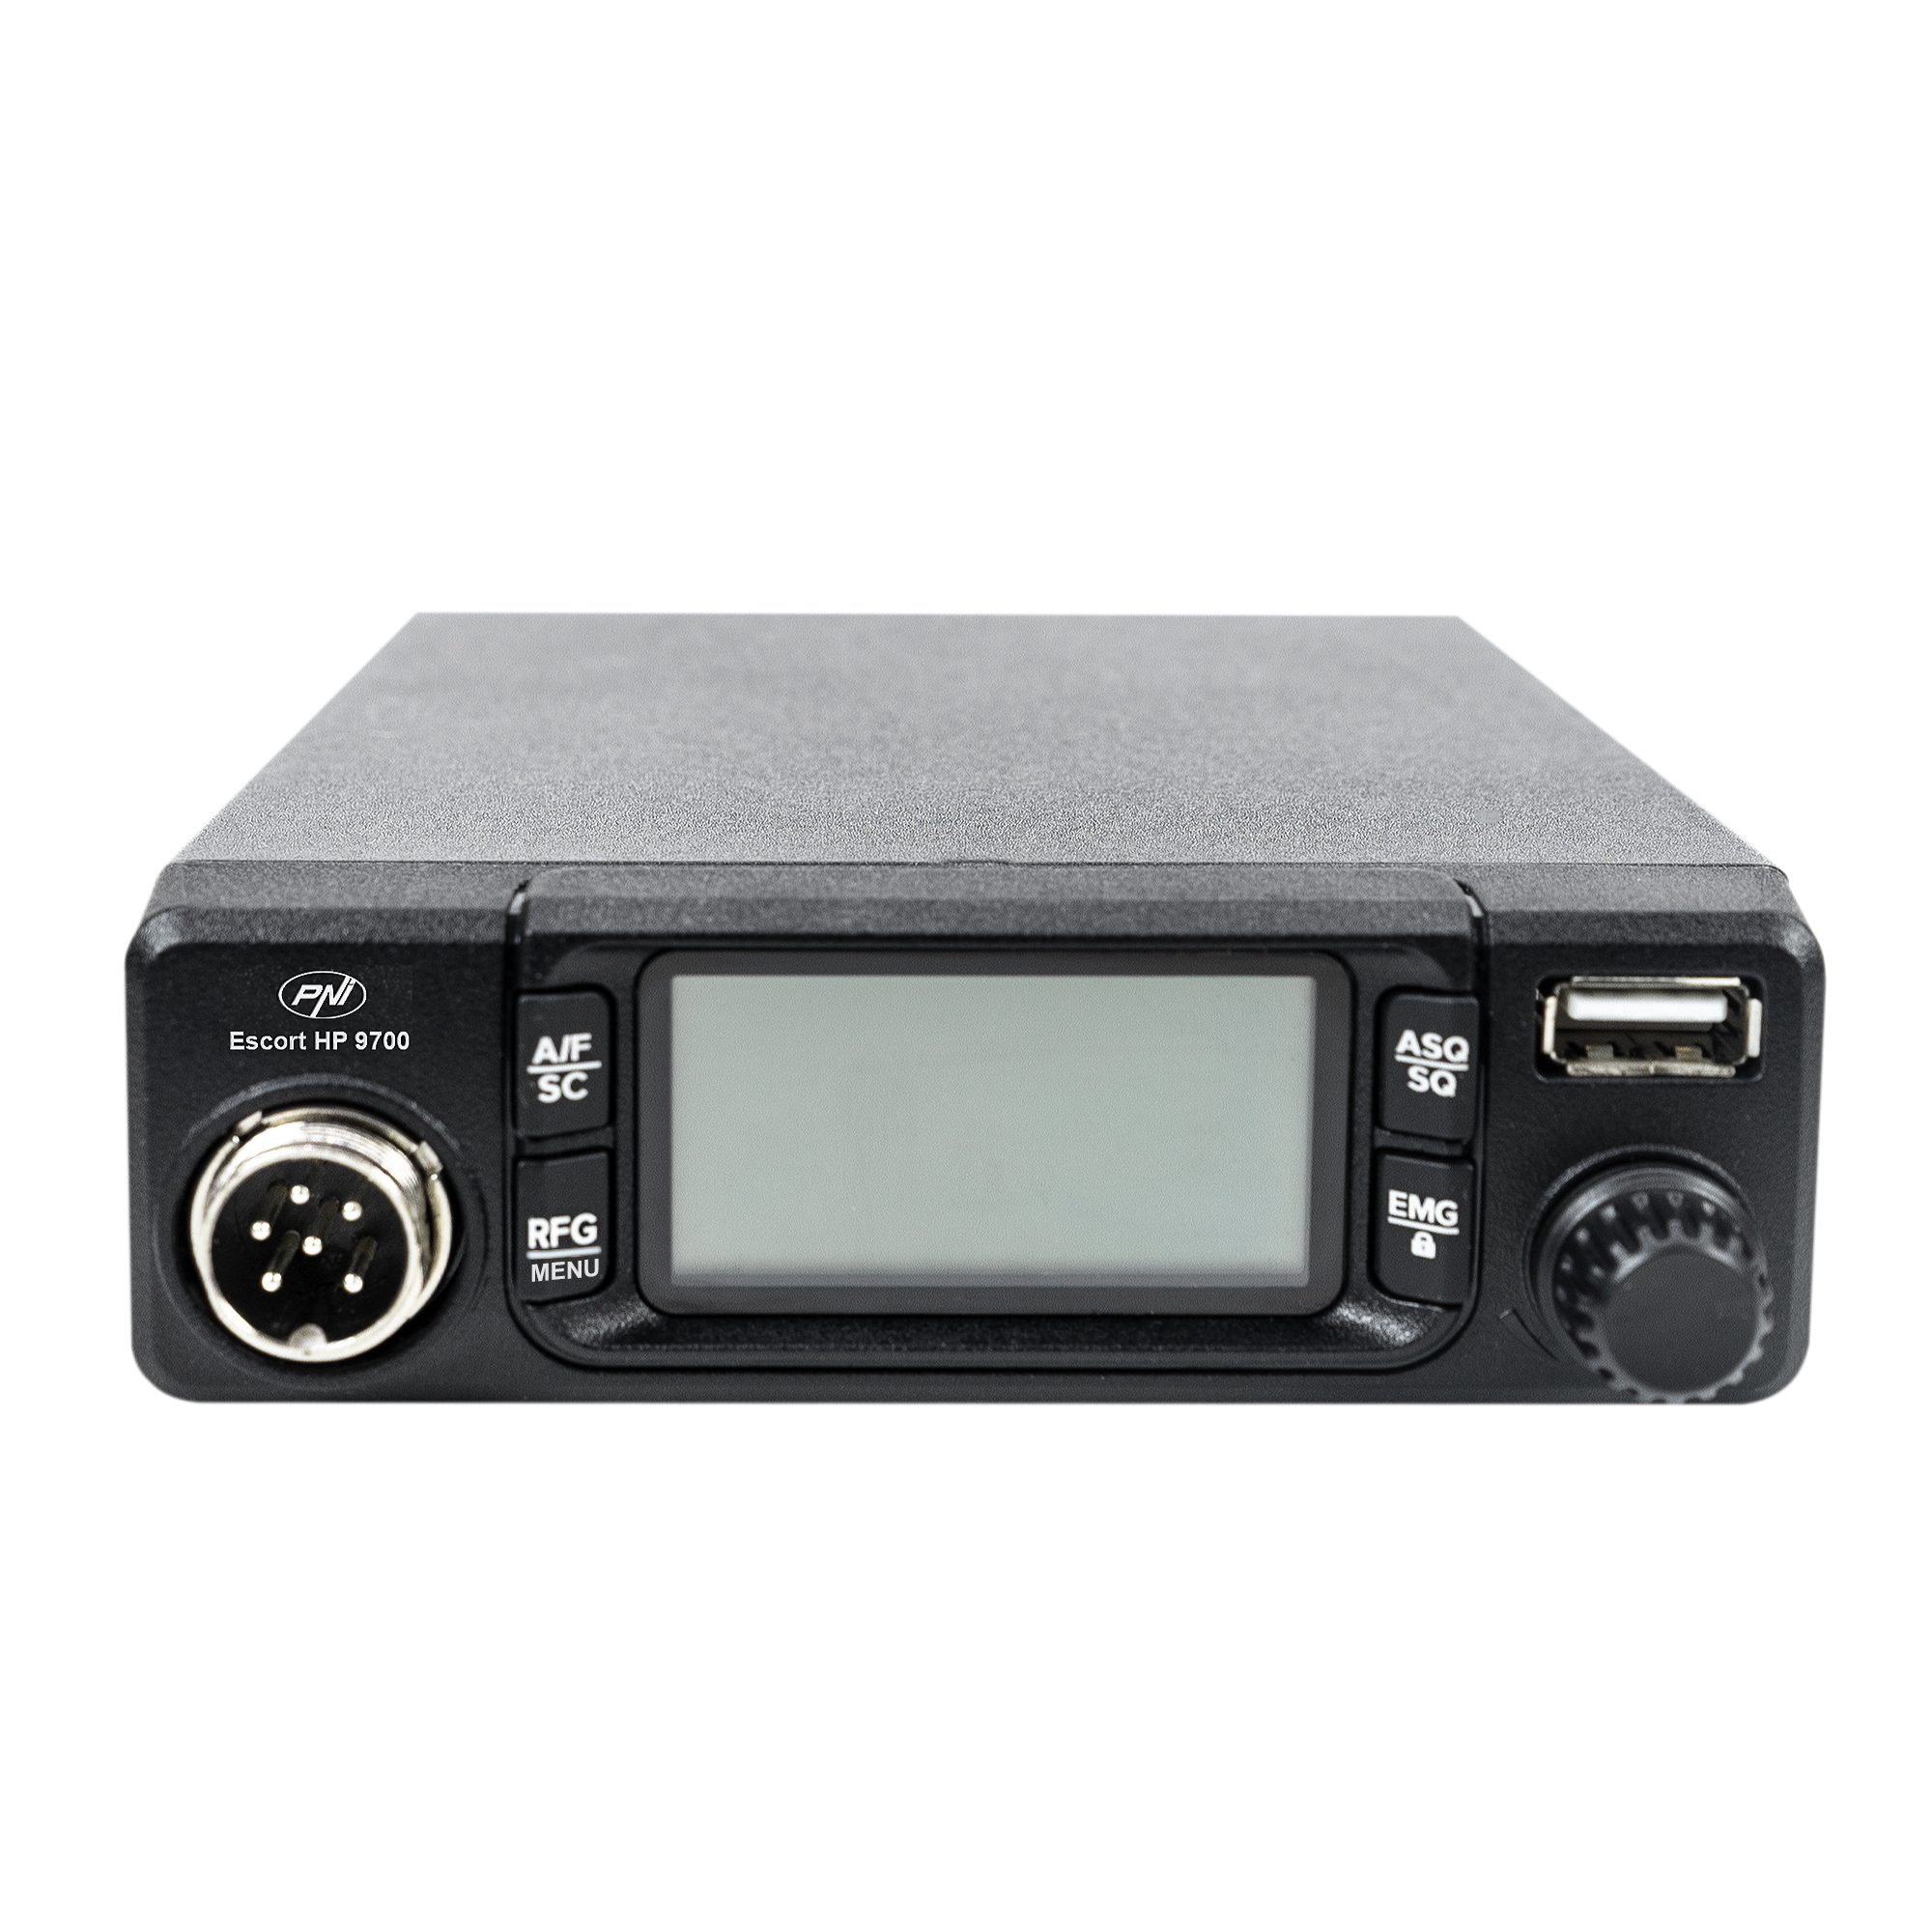 Statie radio CB PNI Escort HP 9700 USB, ANC, ASQ, alimentare 12V / 24V, mufa de bricheta inclusa image6